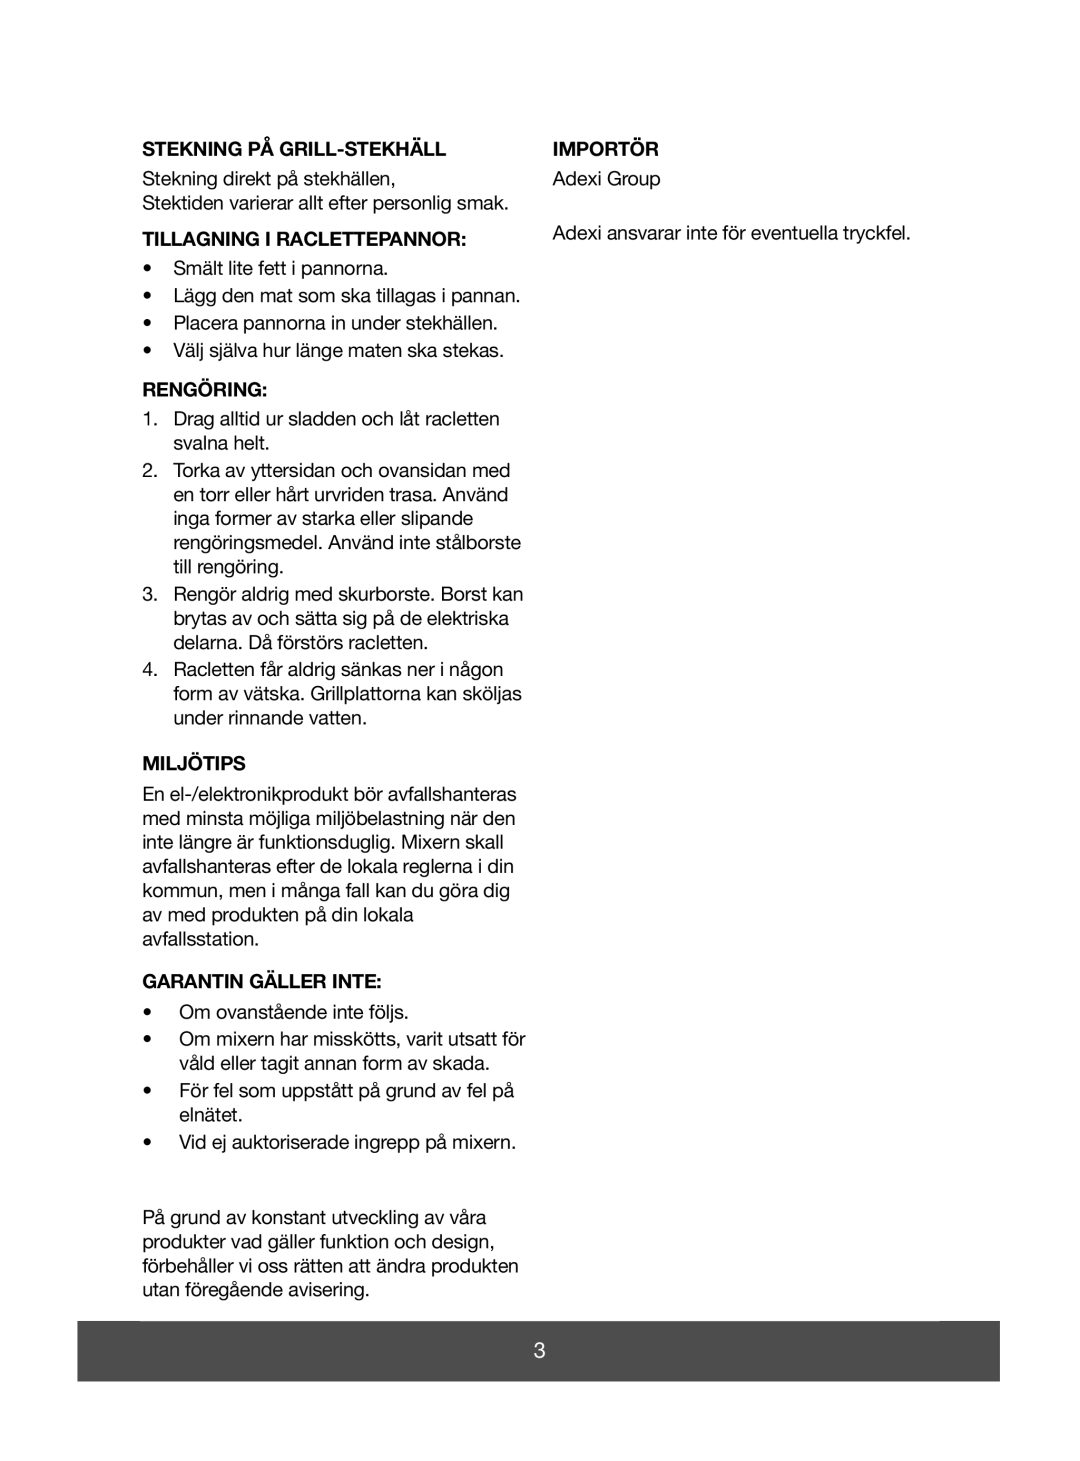 Melissa 643-052 manual Stekning På Grill-Stekhäll, Tillagning I Raclettepannor, Rengöring, Miljötips, Garantin Gäller Inte 